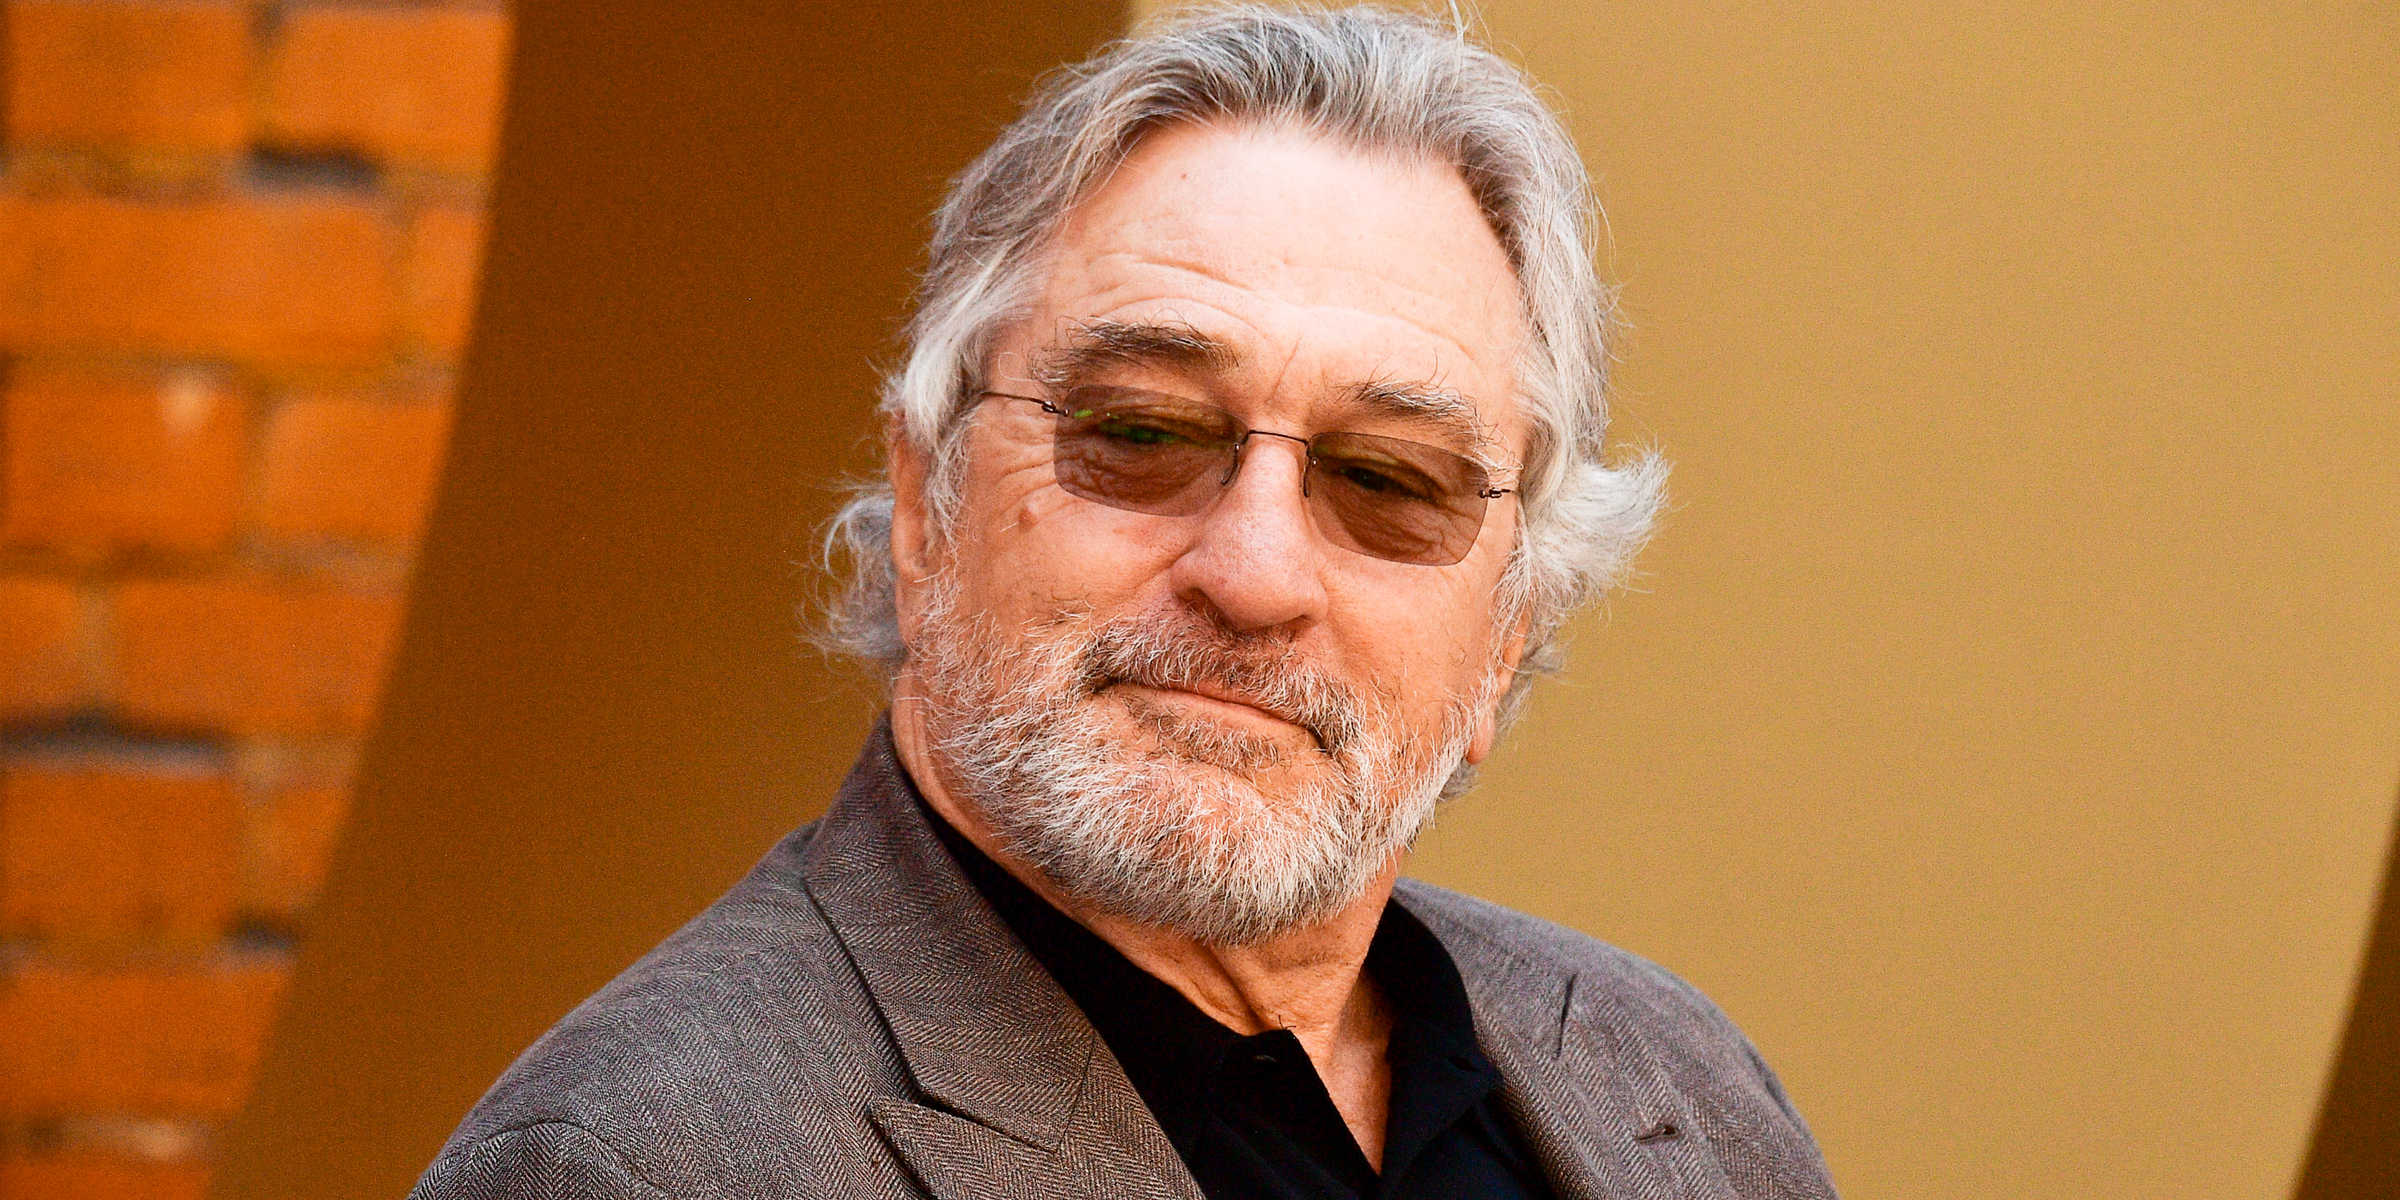 Robert De Niro | Source: Getty Images